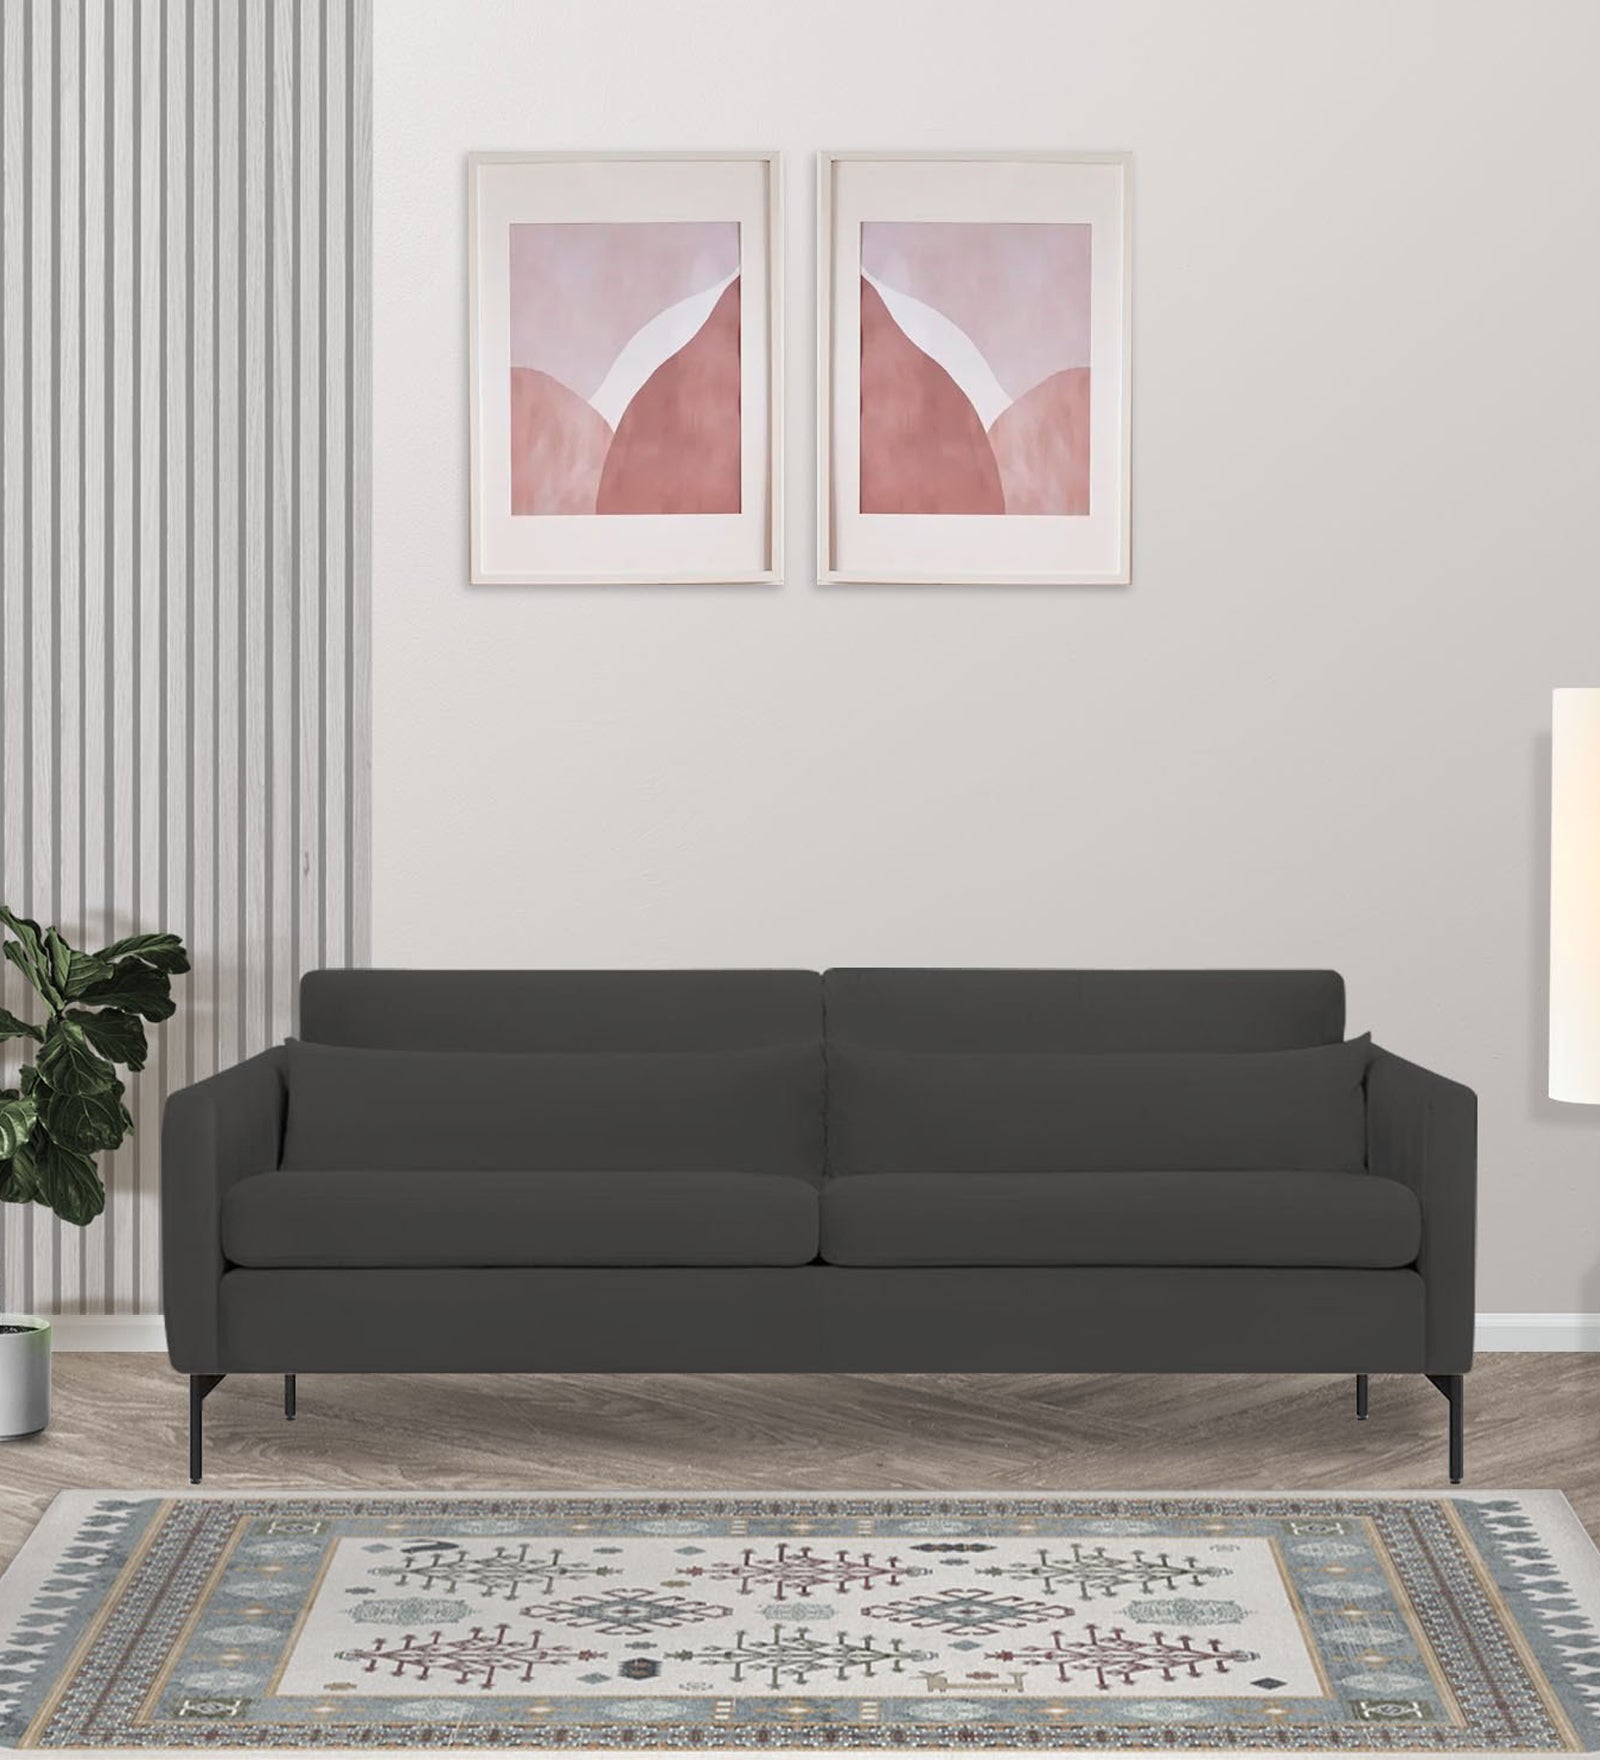 Haru Velvet 3 Seater Sofa in Hory Grey Colour